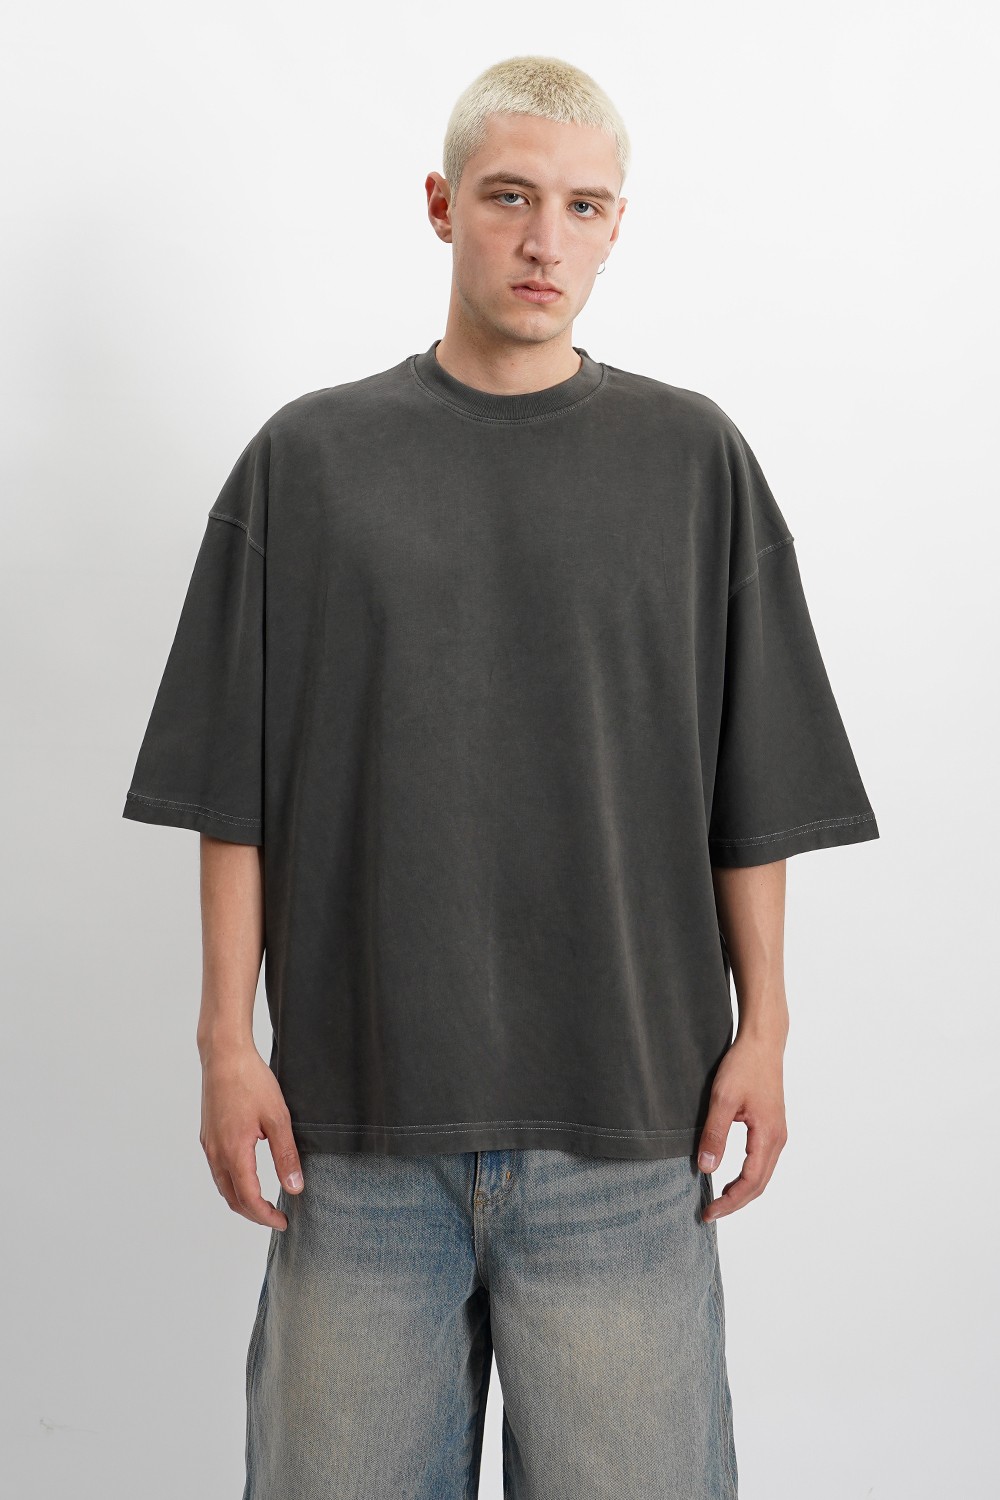 Sohigh Blank Oversized T-Shirt - Washed Grey